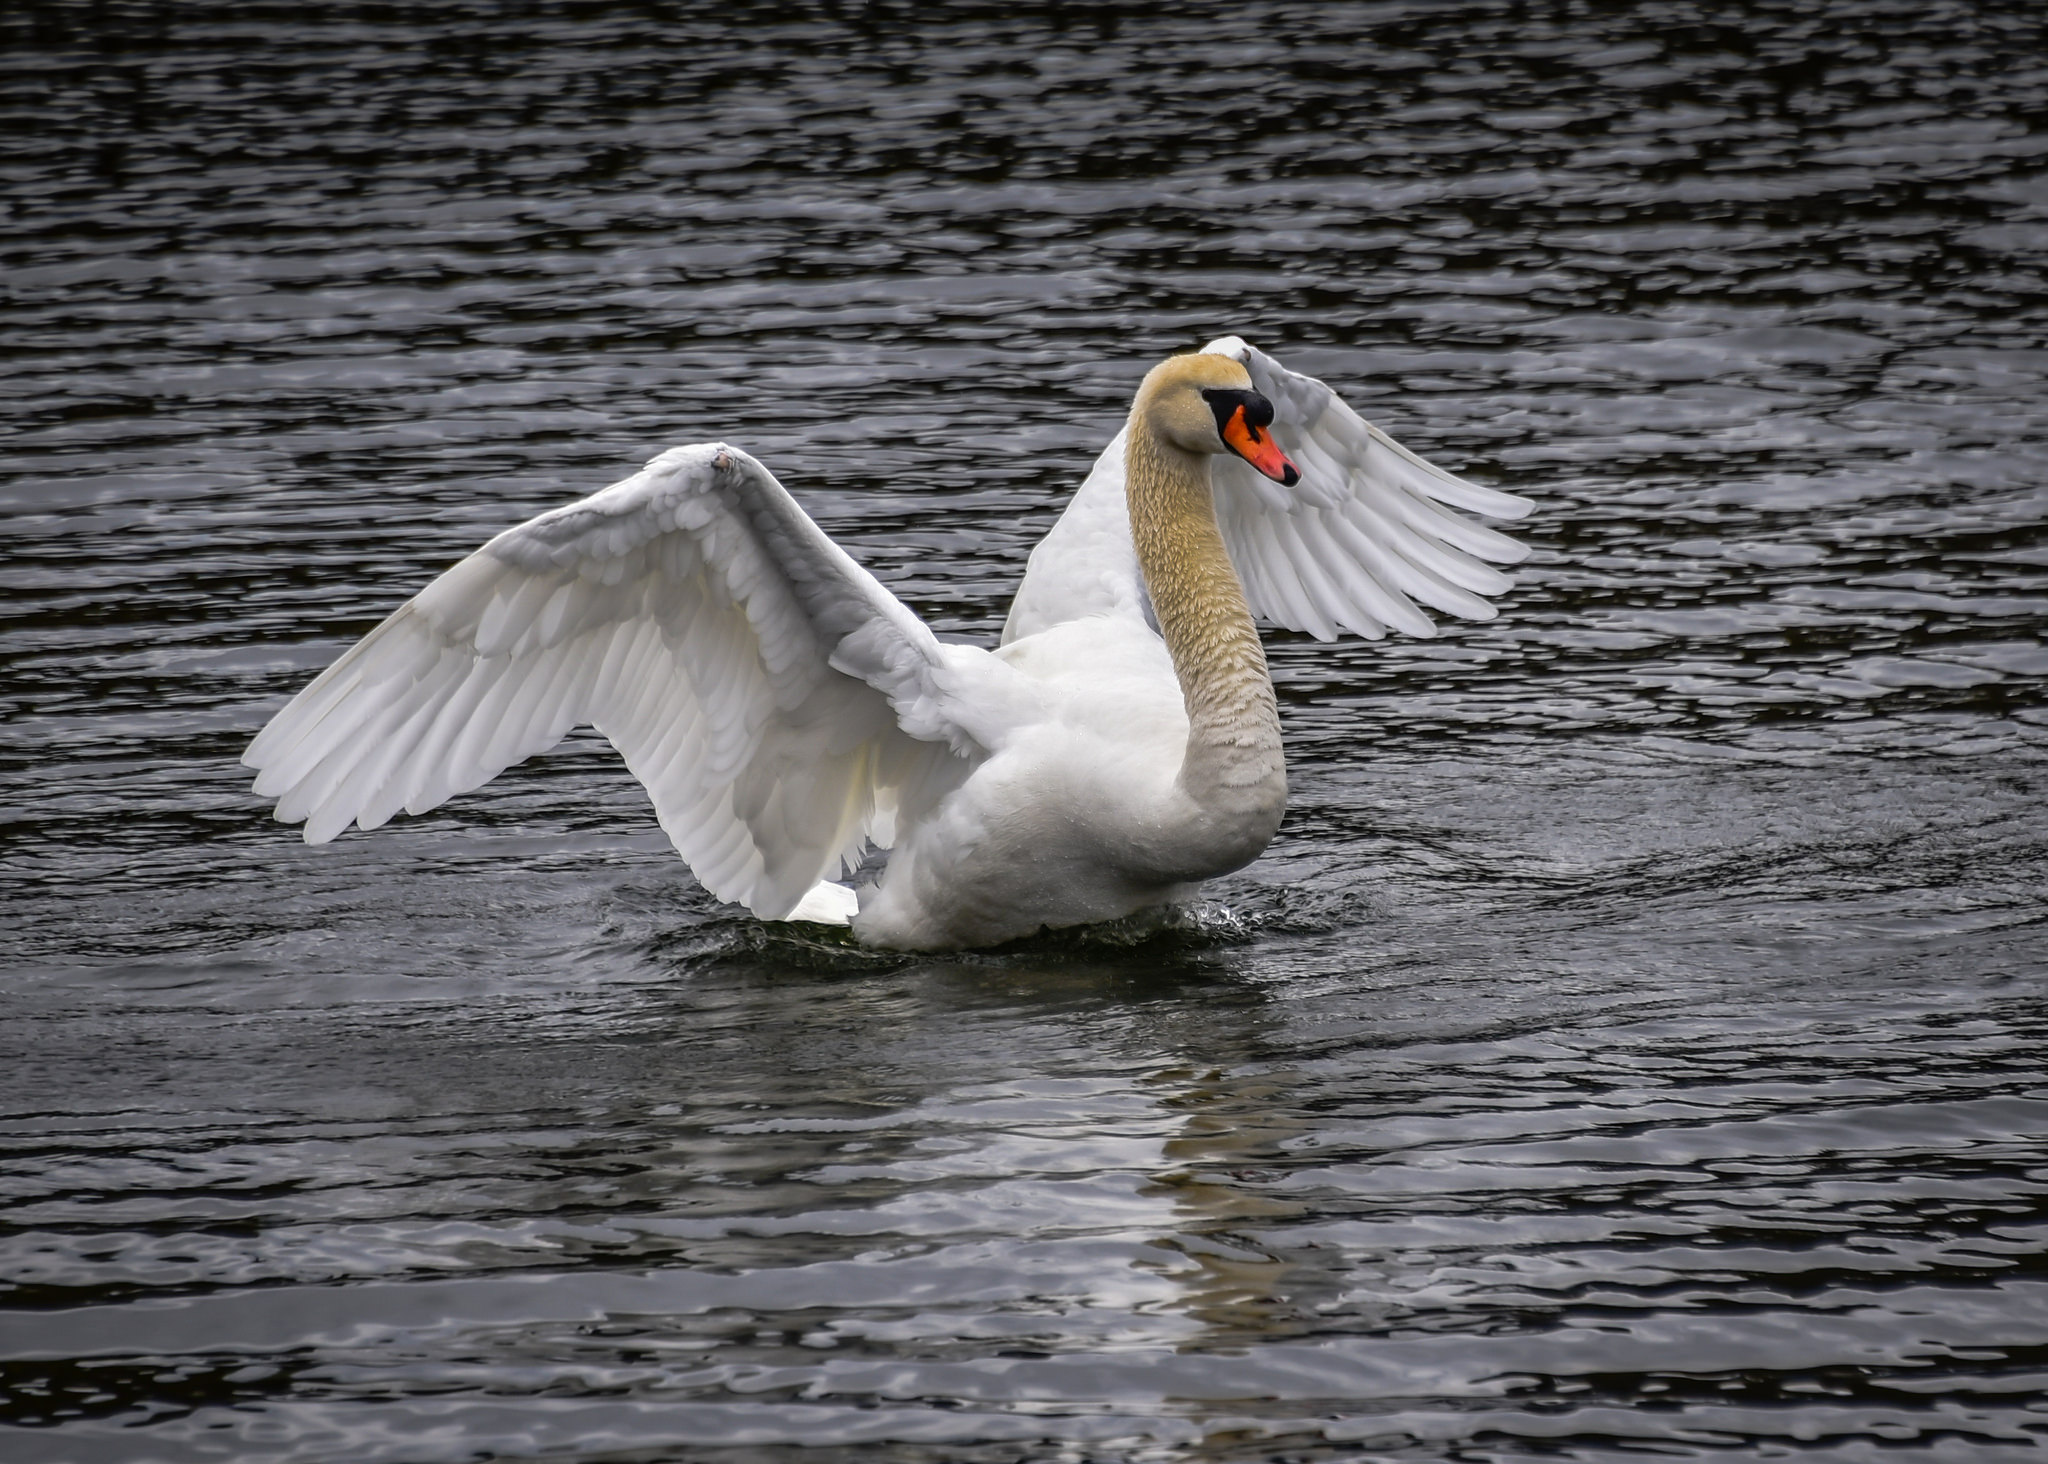 White Swan at Drottningholms Slott - Drottningholm Royal Palace ...